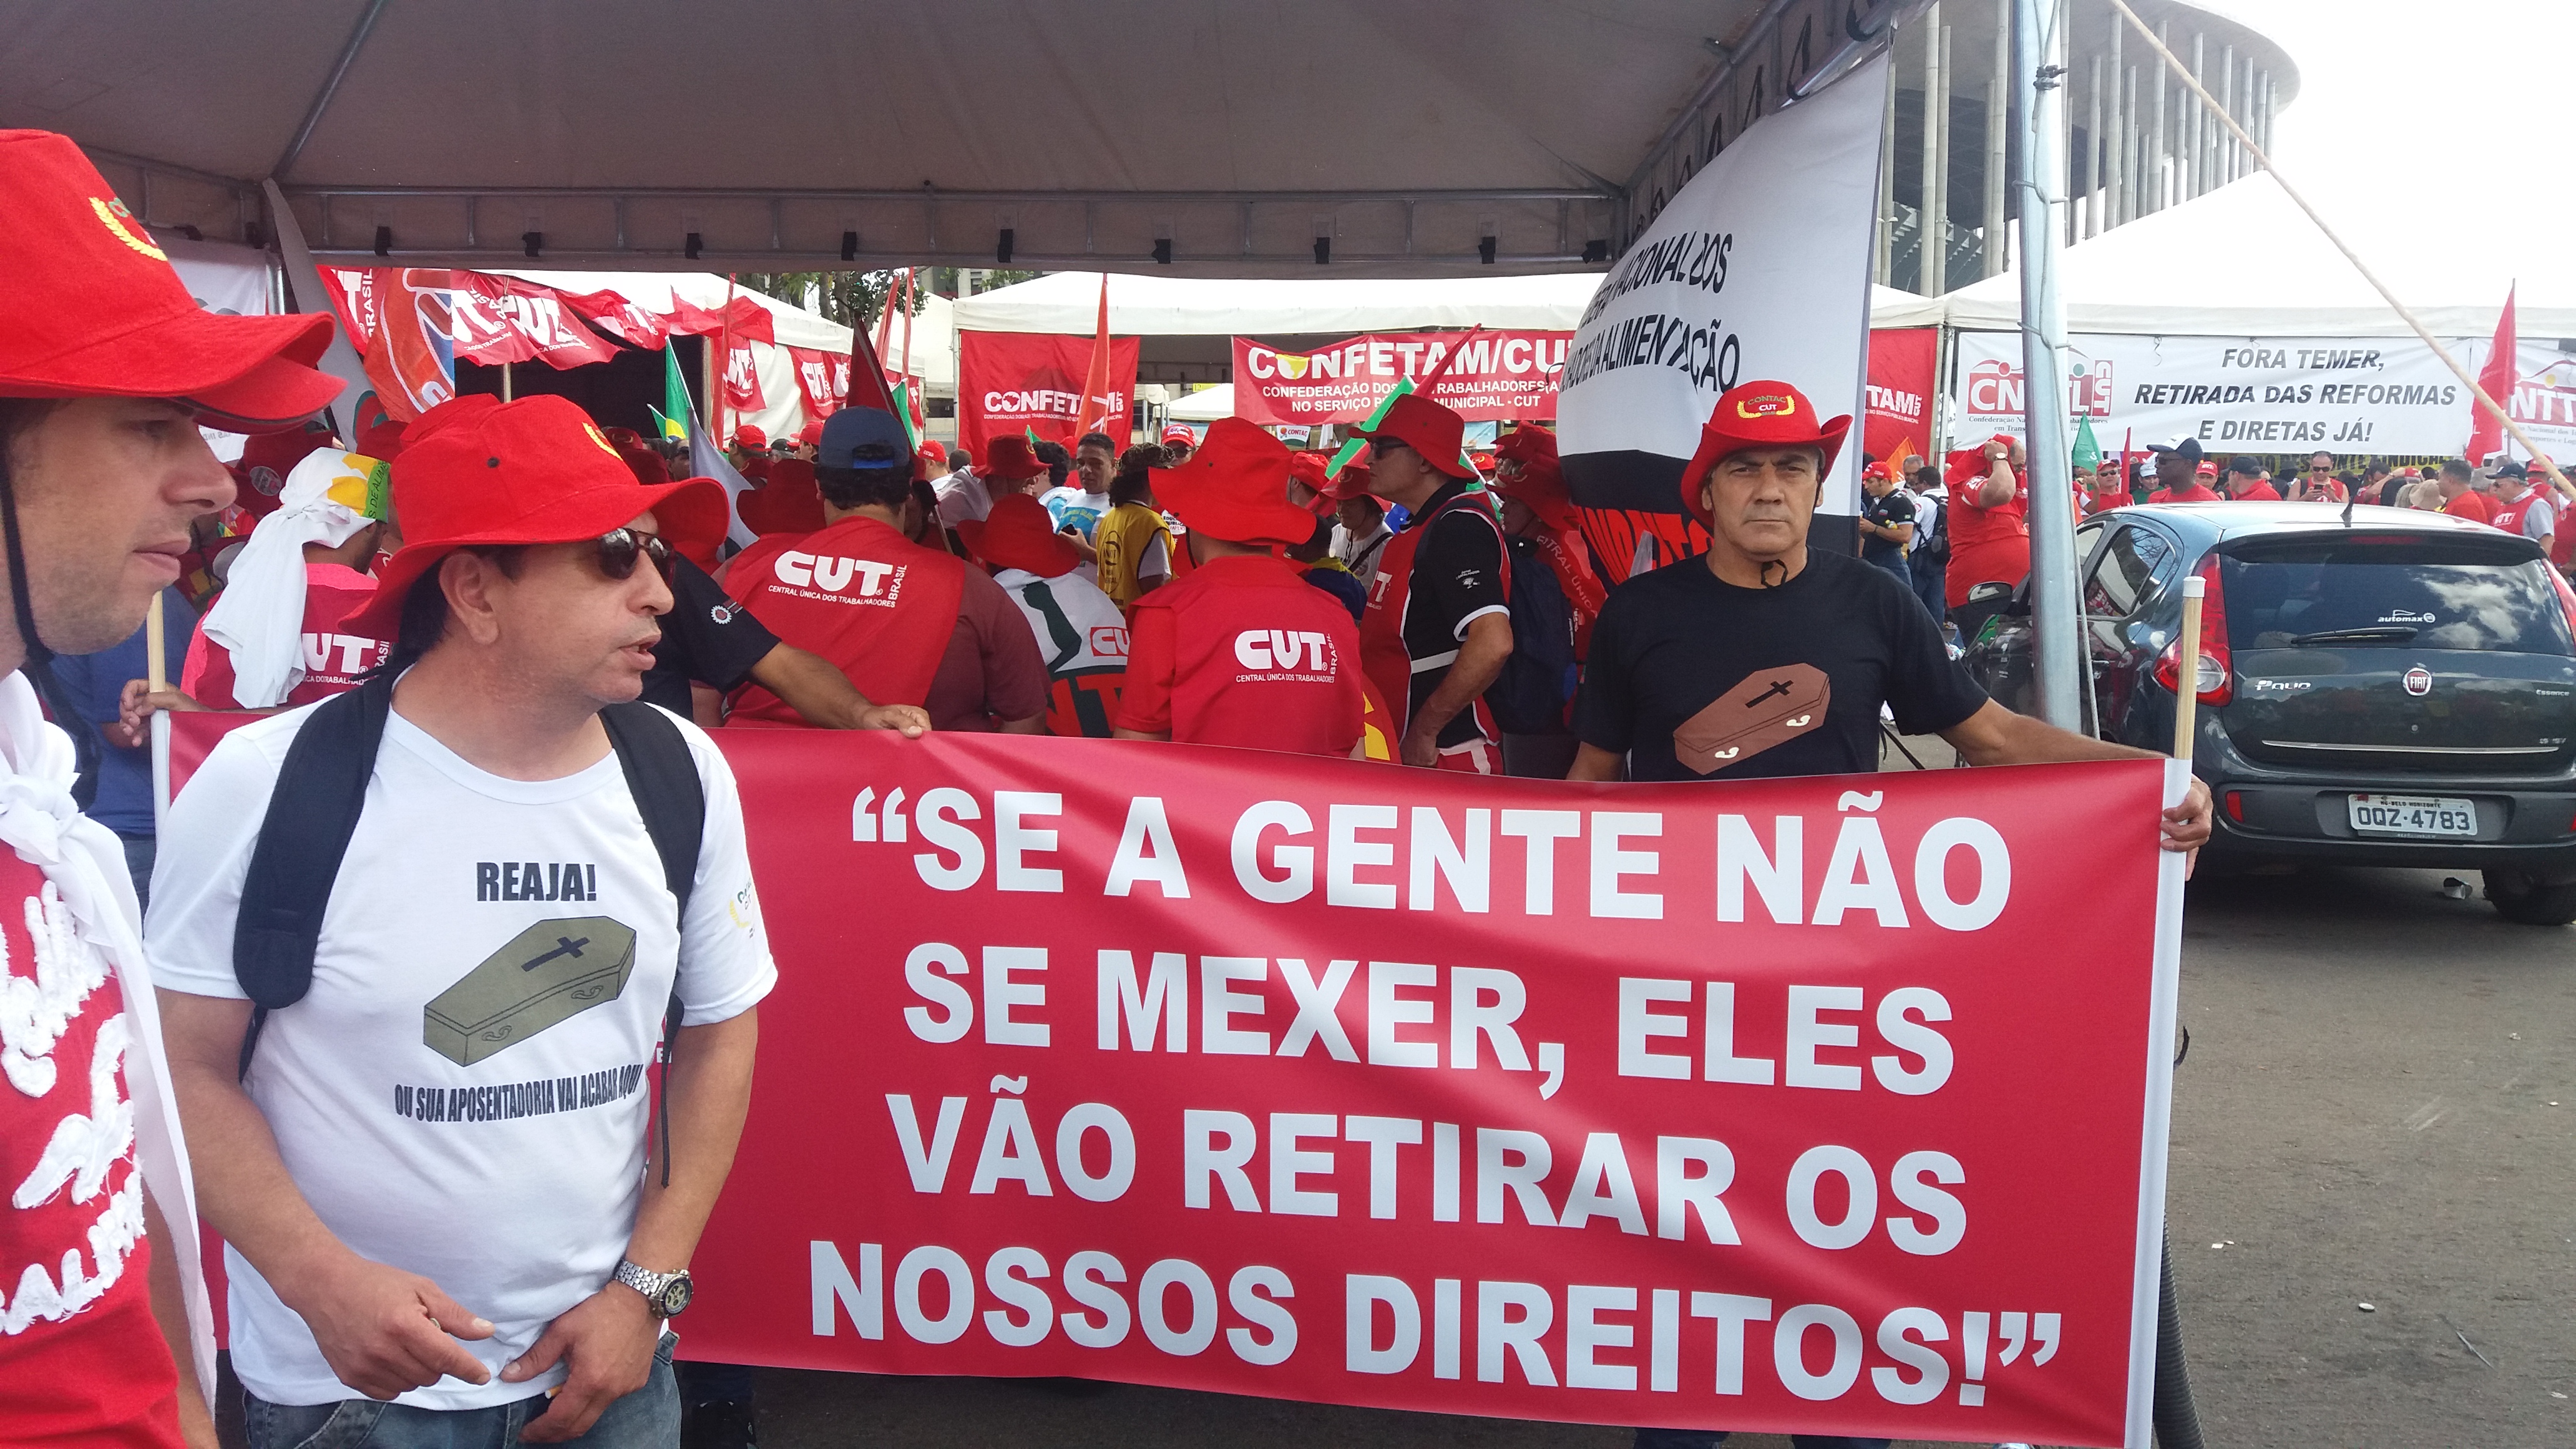 MANIFESTAÇÃO em Brasília, defendendo a RETIRADA DA PROPOSTA DA REFORMA TRABALHISTA E PREVIDENCIÁRIA